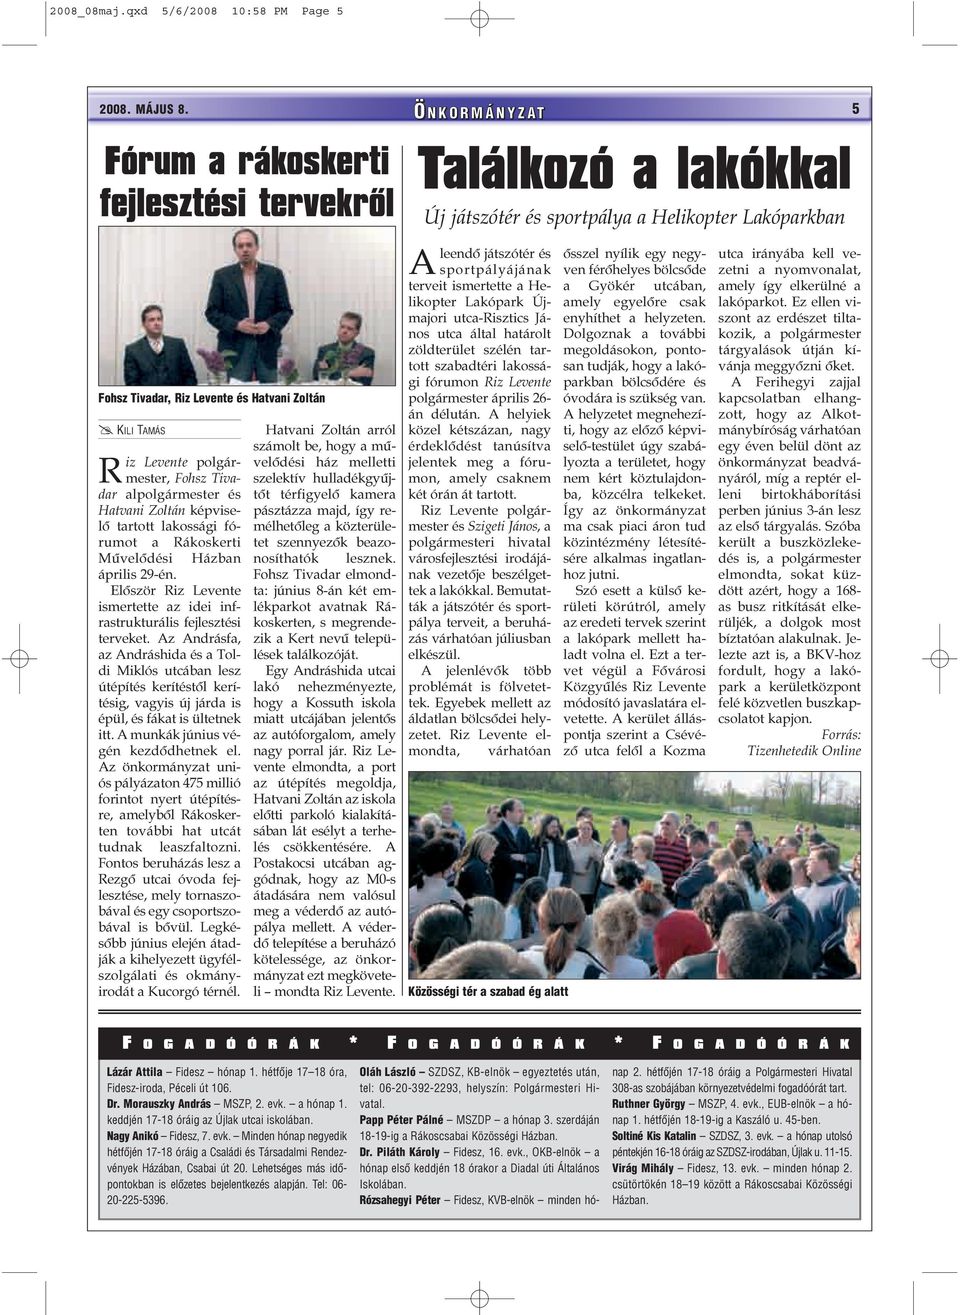 képviselõ tartott lakossági fórumot a Rákoskerti Mûvelõdési Házban április 29-én. Elõször Riz Levente ismertette az idei infrastrukturális fejlesztési terveket.